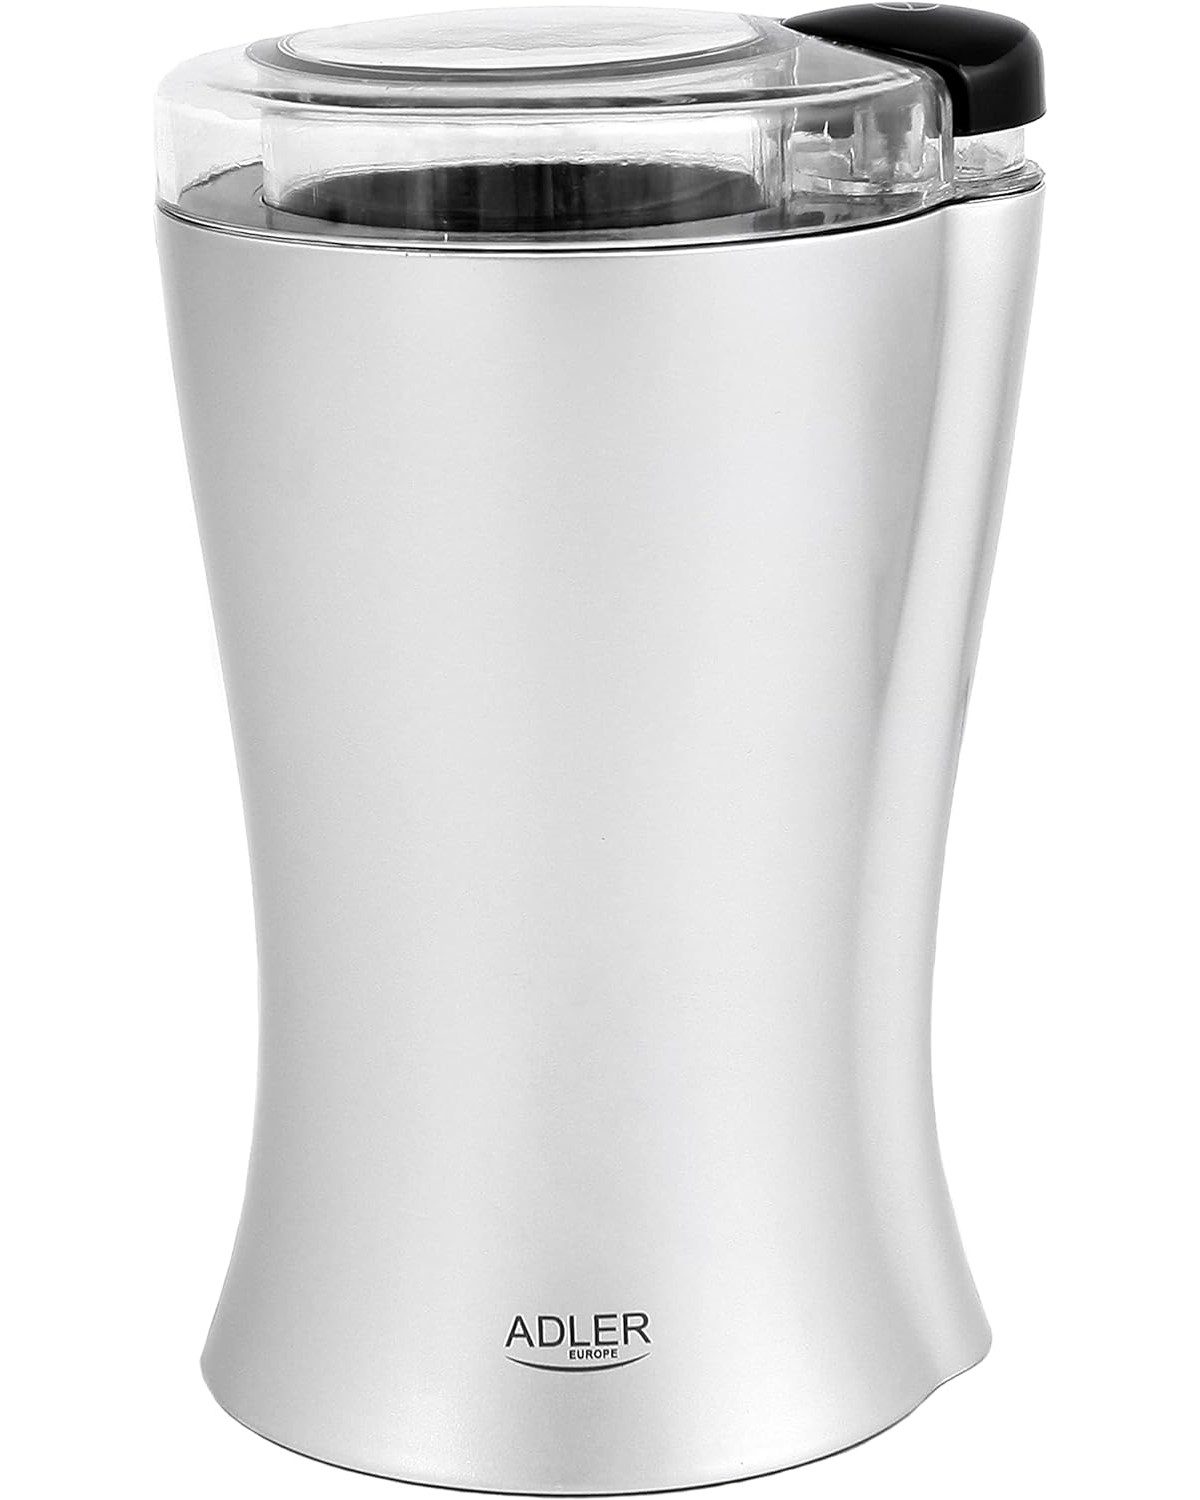 Schnelles An- ADLER (150 Einzigartige Watt, Silber Ausschalten) AD443 Edelstahlschale: und und Mahlen, Kaffemühle regelmäßiges und Klingenform JUNG Schnelles